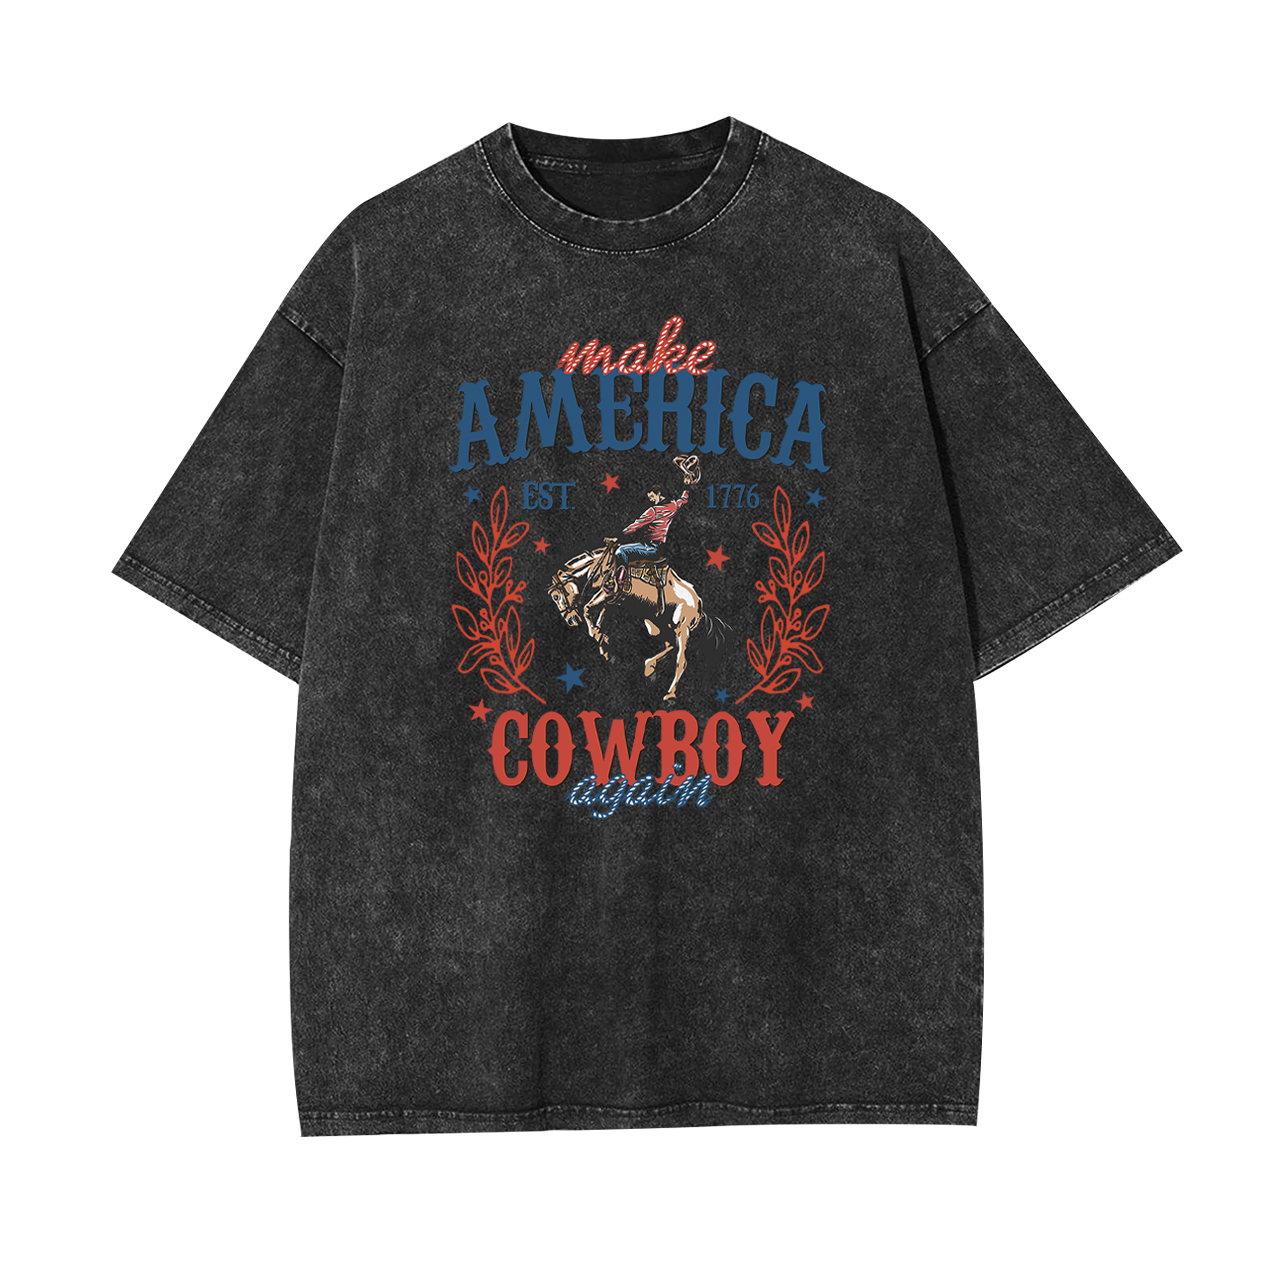 Made Ameria EST. 1776 Cowboy Again Garment-dye Tees